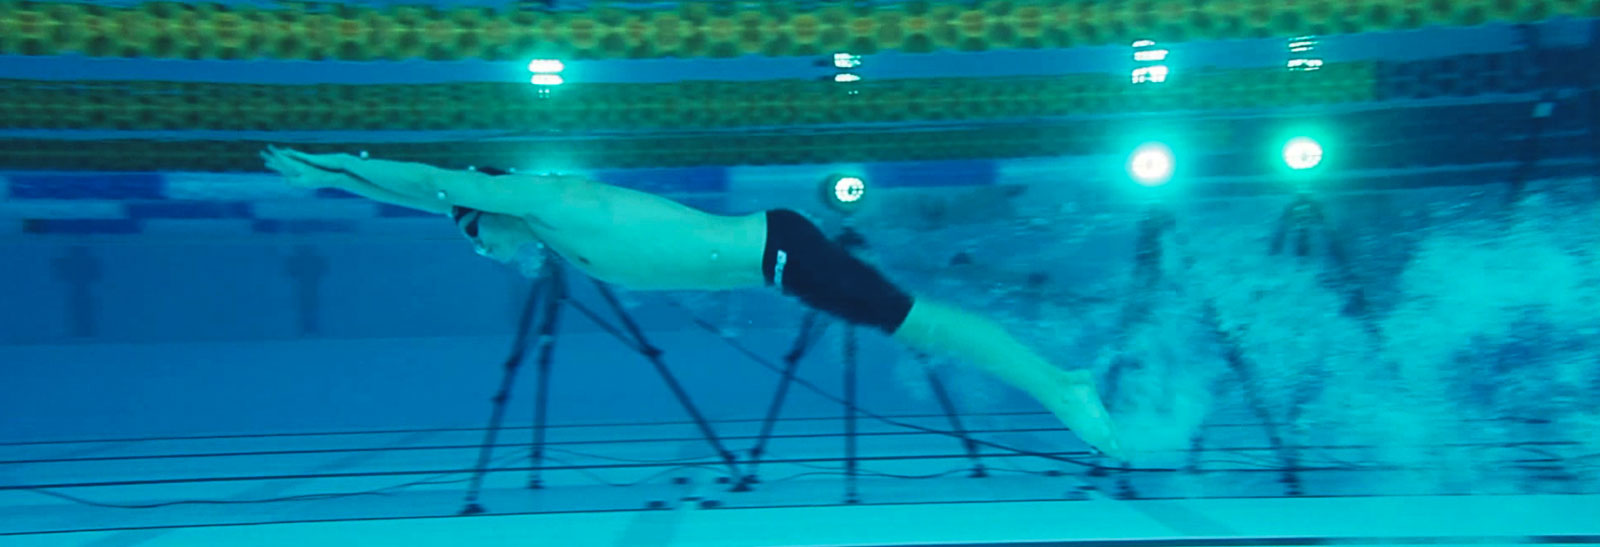 analiza-pływaka-pod-wodą-widok-z-kamera-referencyjna-Qualisys-Skyfi